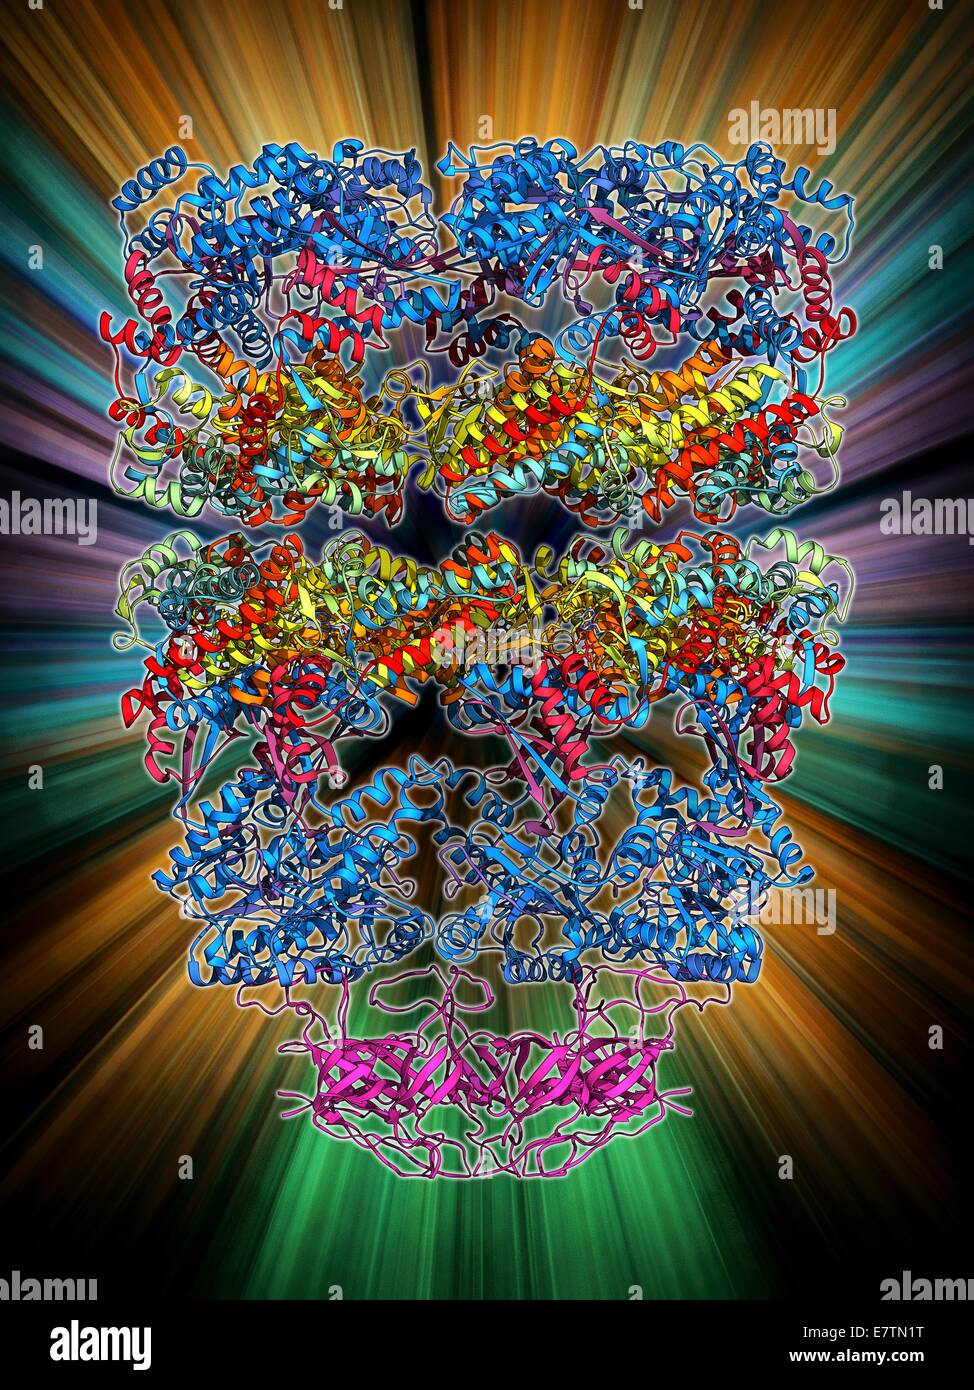 Chaperonin complesso proteico. Il modello molecolare che mostra la  struttura di un GroES GroEL (ADP)7 chaperonin complesso. Le chaperonine  sono proteine che forniscono le condizioni favorevoli per il corretto  ripiegamento delle altre